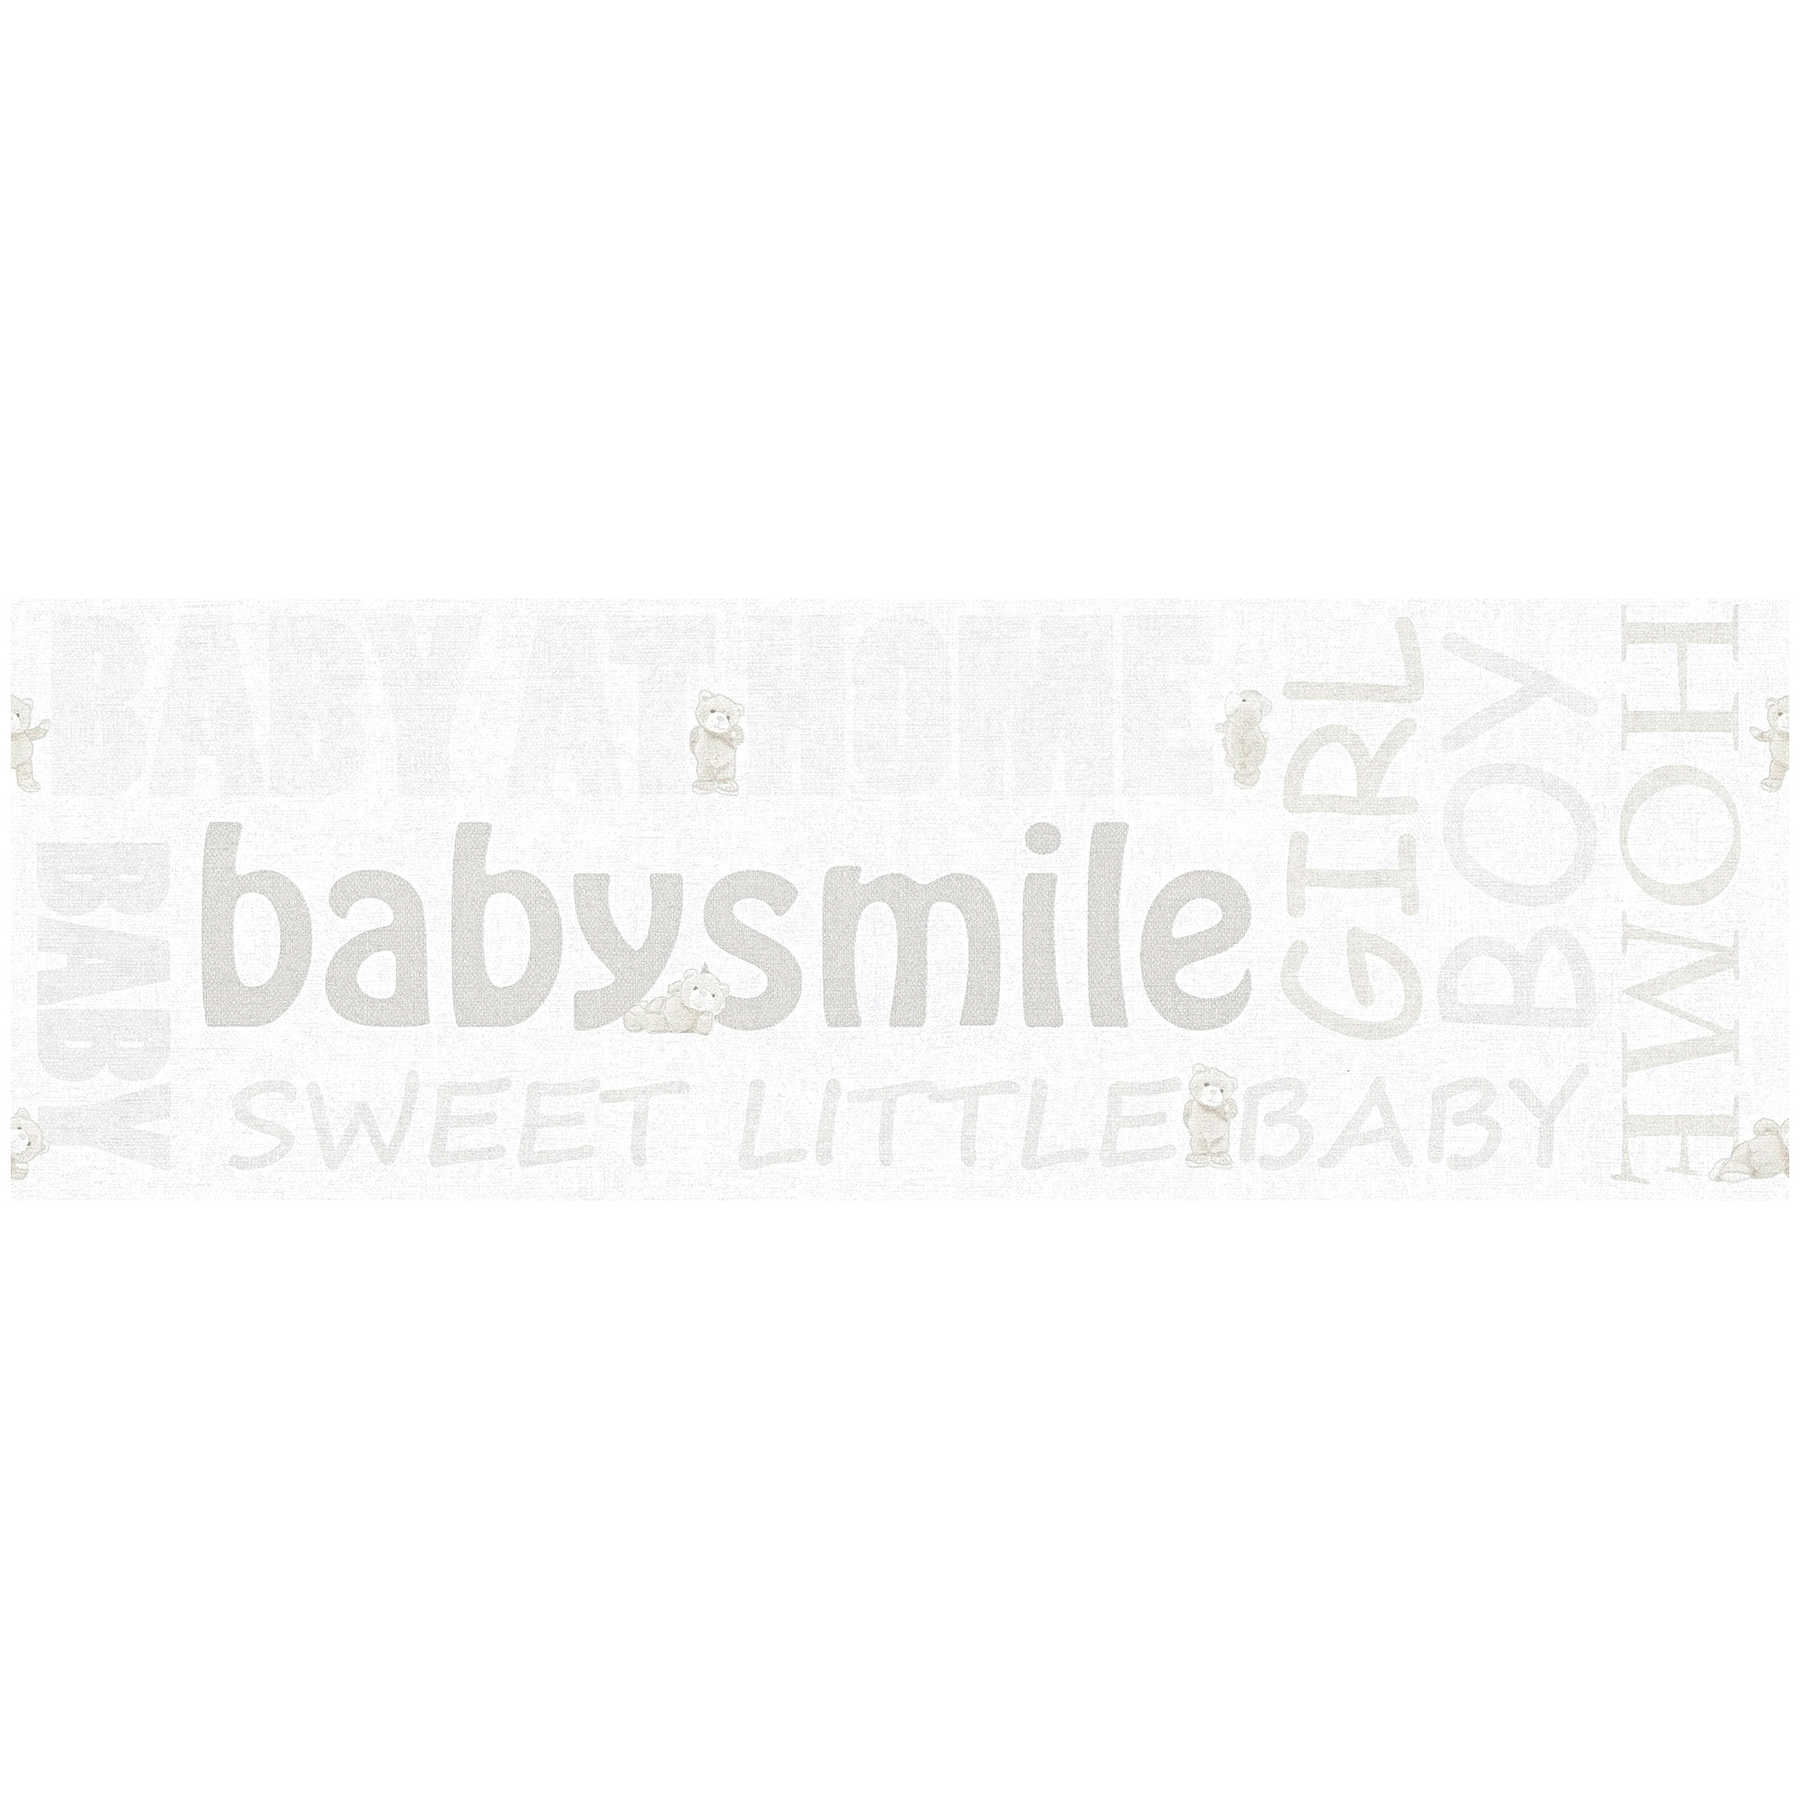 Nursery border Baby Smile with metallic effect - White
